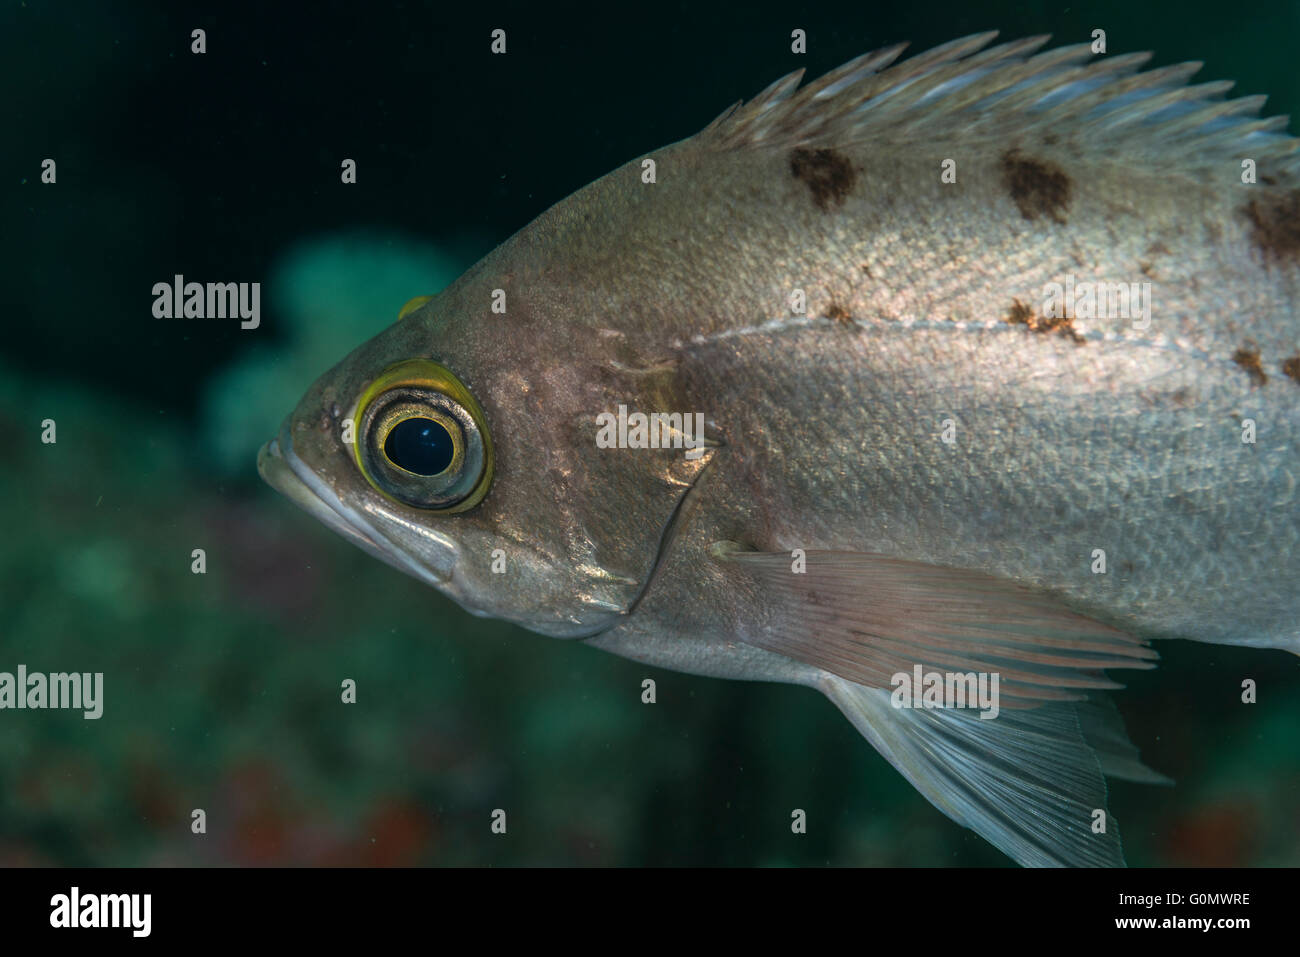 Giapponese il pesce rosso. close up. Nome scientifico : Sebastes inermis Cuvier,1829. A Owase, Mie, Giappone. Profondità 20m Foto Stock